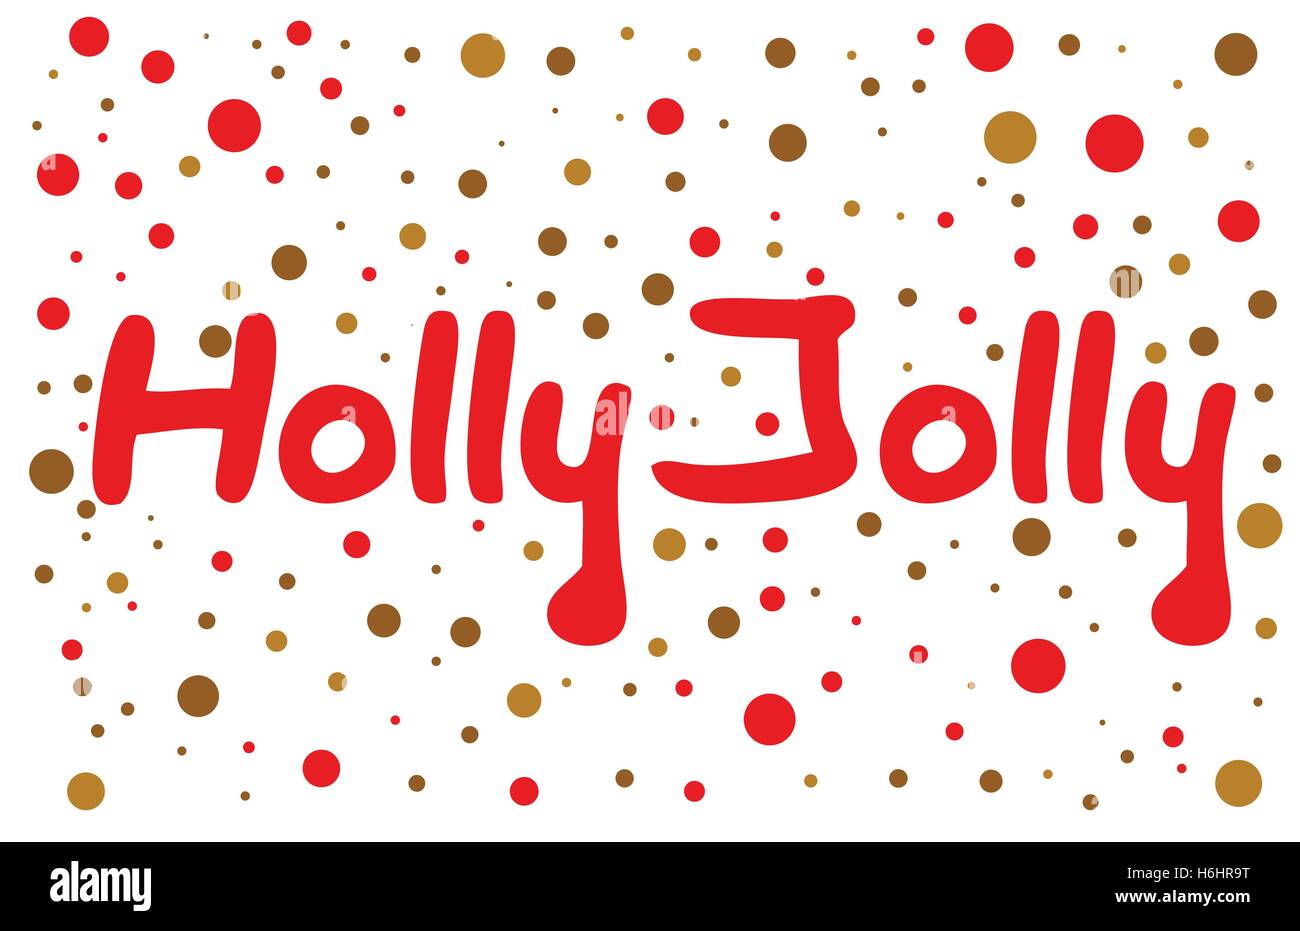 Holly Jolly Schriftzug mit Farbpunkte. Hand-gezogene Design-Element. Stock Vektor